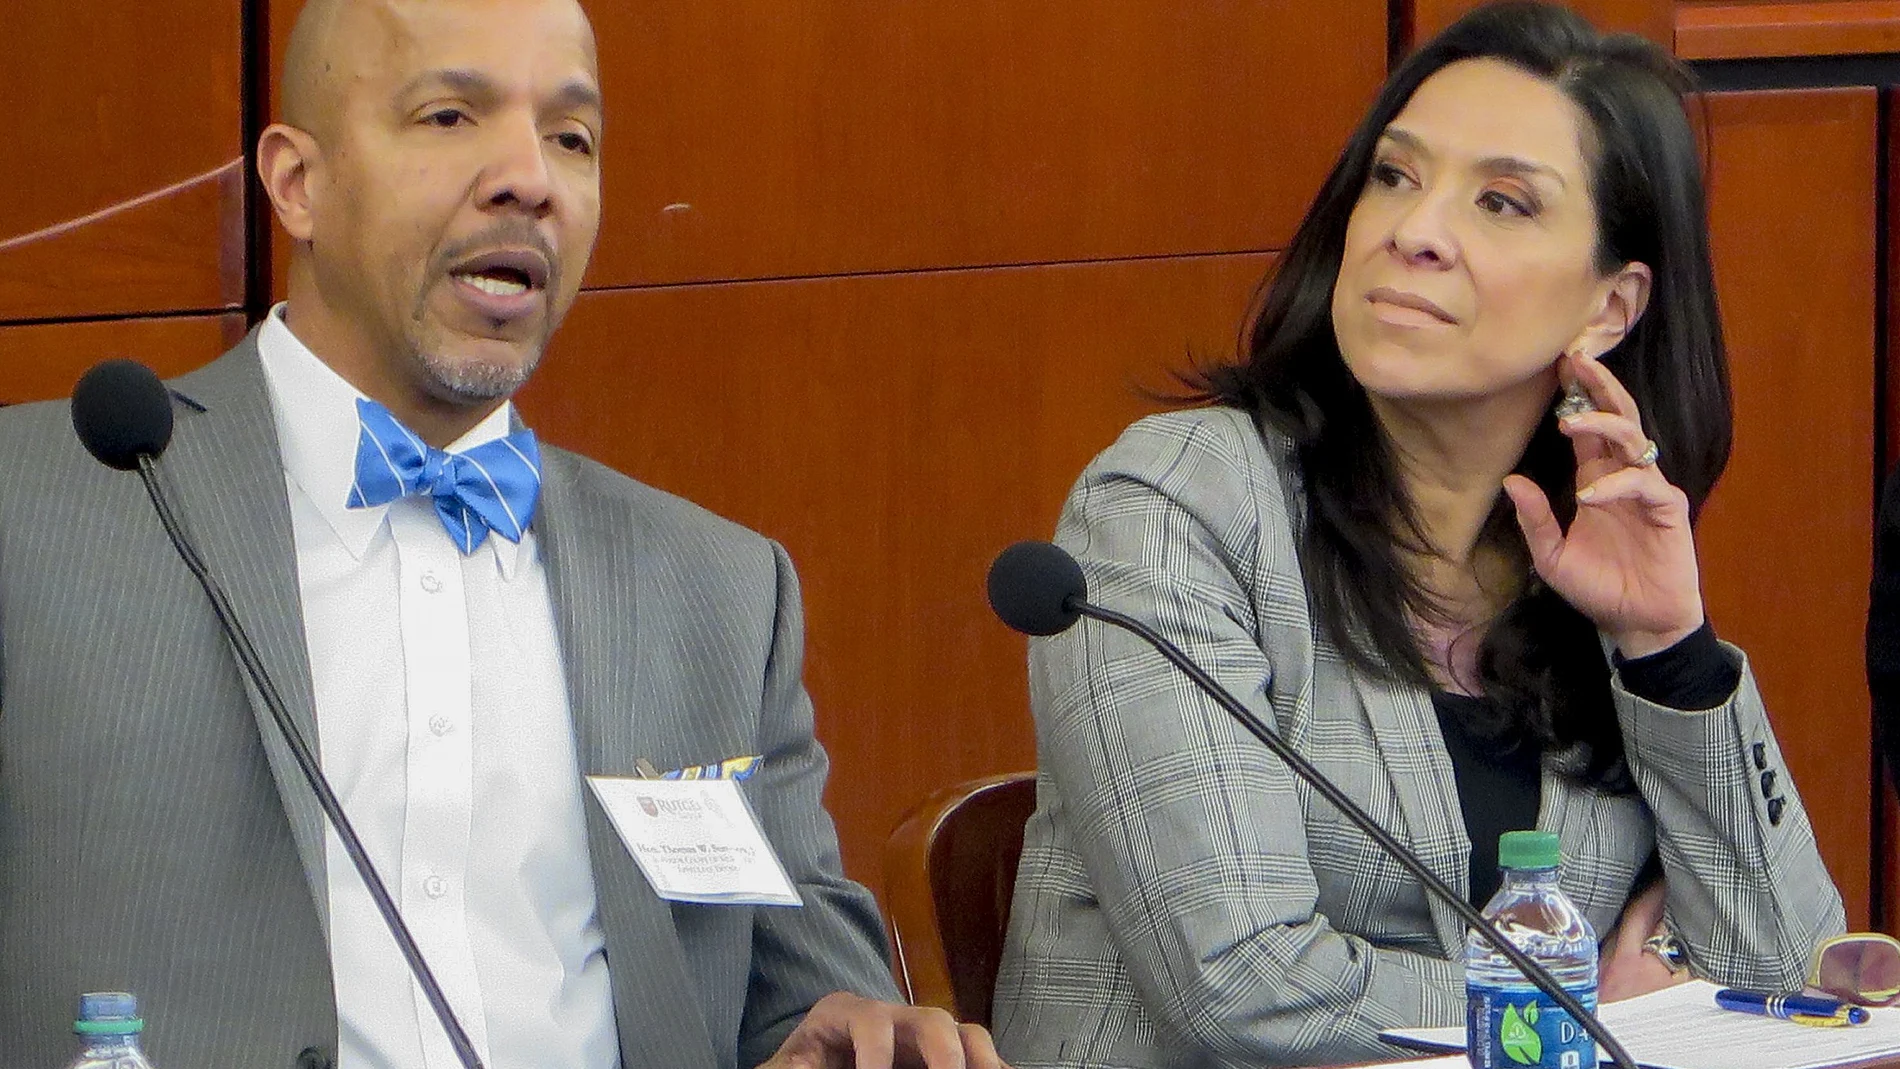 Imagen de la jueza de distrito Esther Salas, right, durante una conferencia en la Universidad de Derecho de Rutgers en Newark